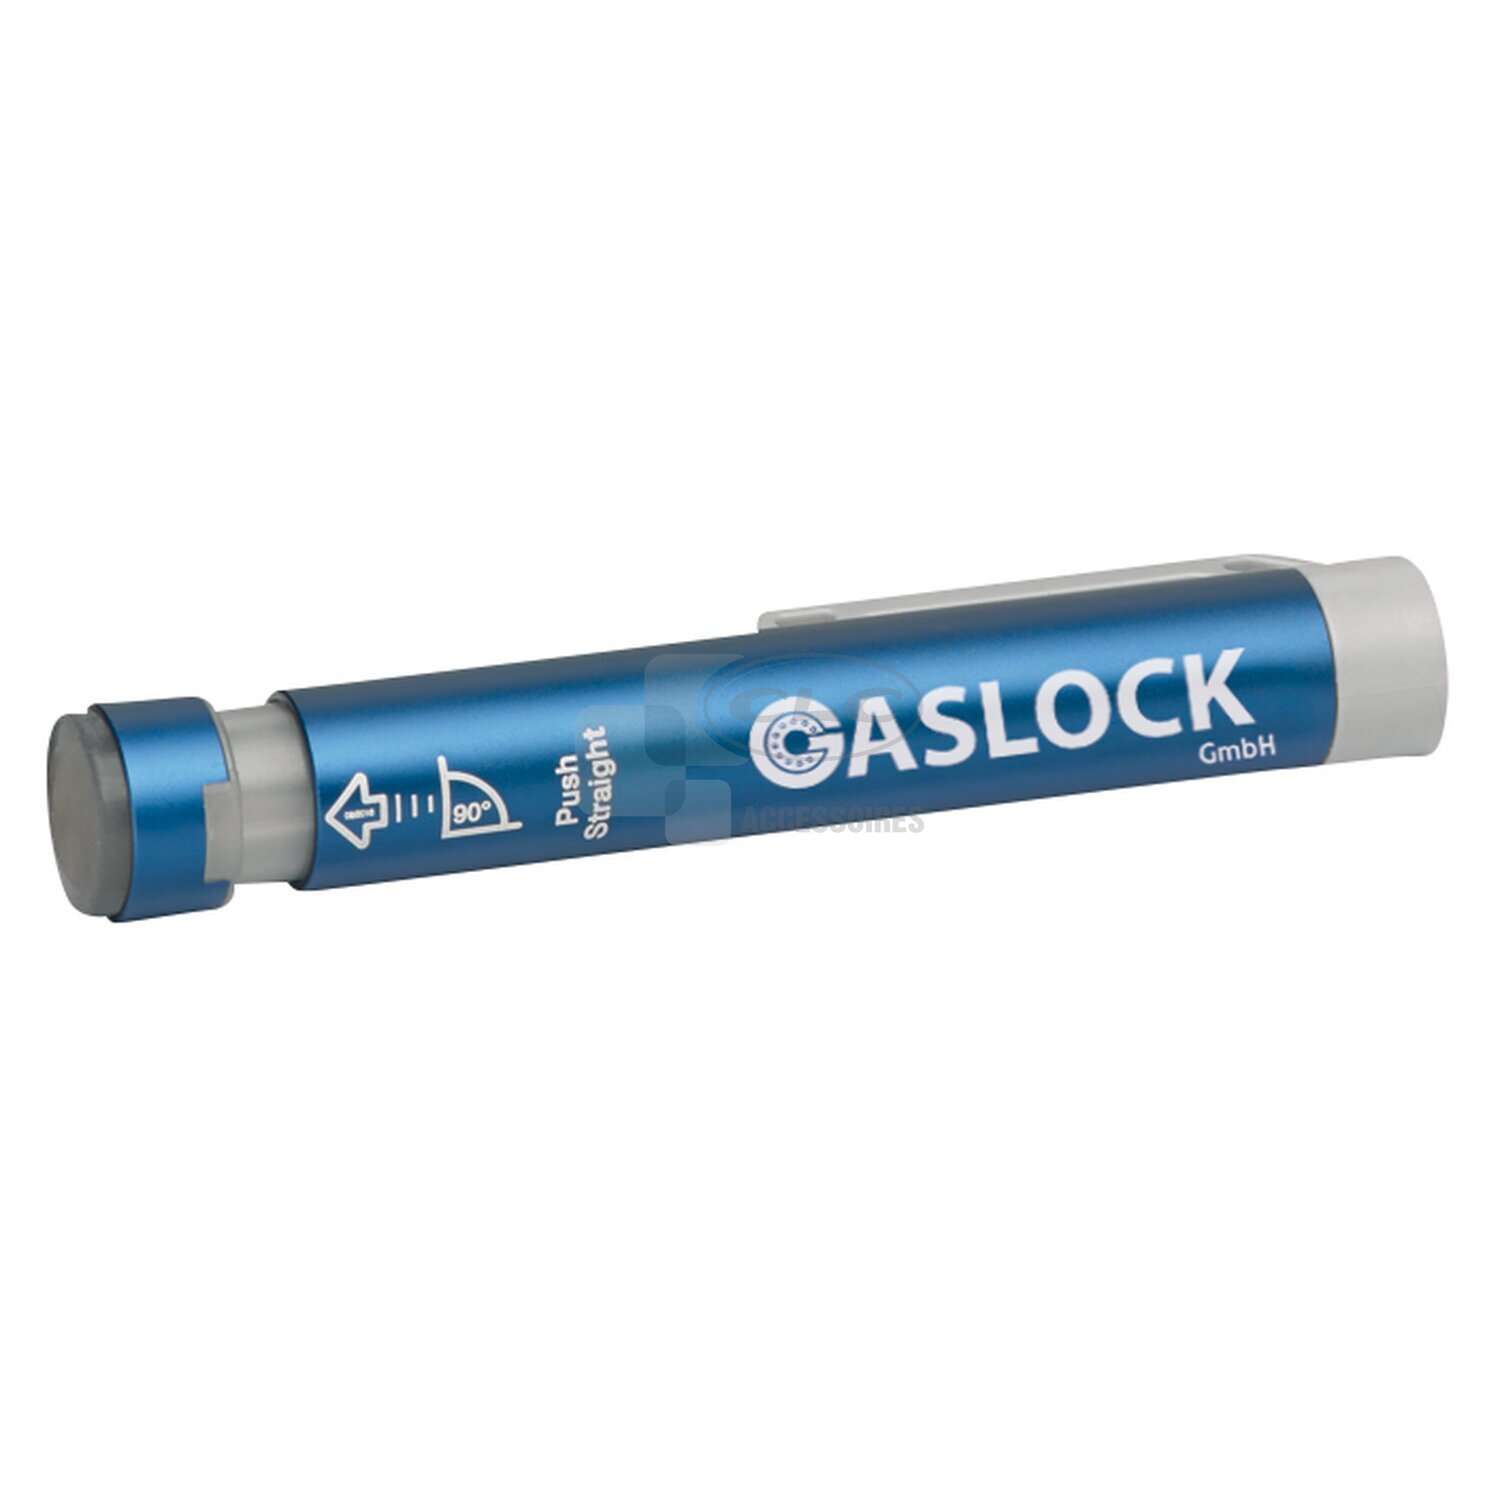 Contrôleur de niveau de gaz - pour bouteille de gaz GASLOW